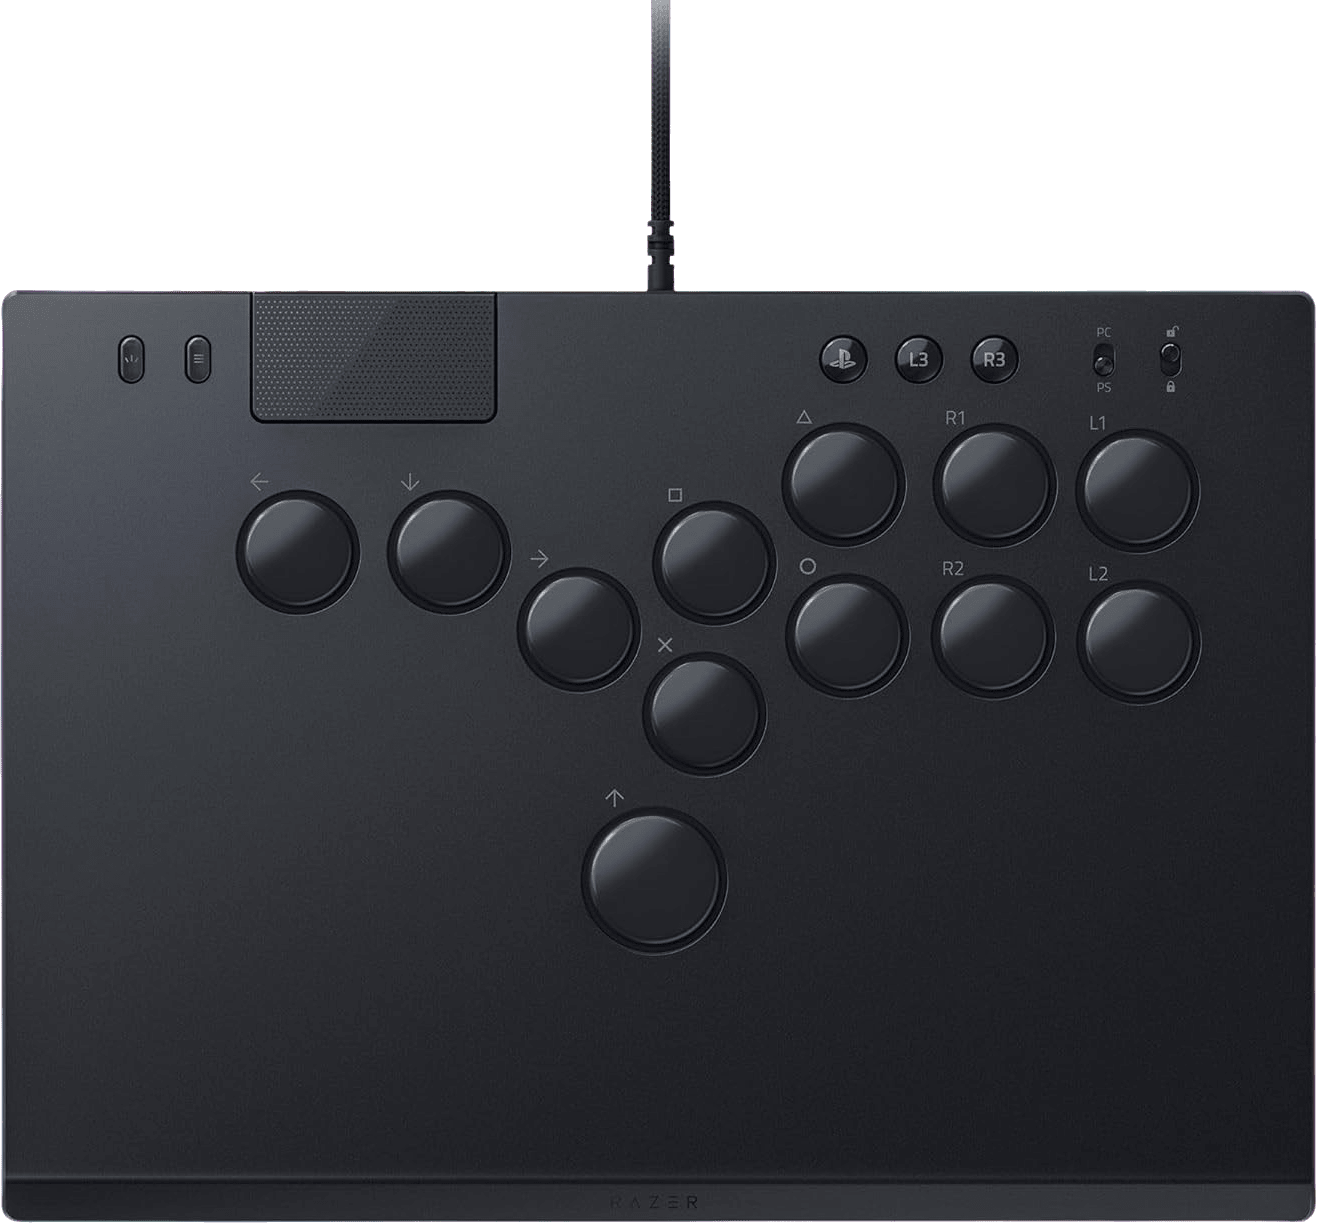 Razer Kitsune - All-Button Optical Arcade Controller - PS5 and PC - Arcade stick - PC